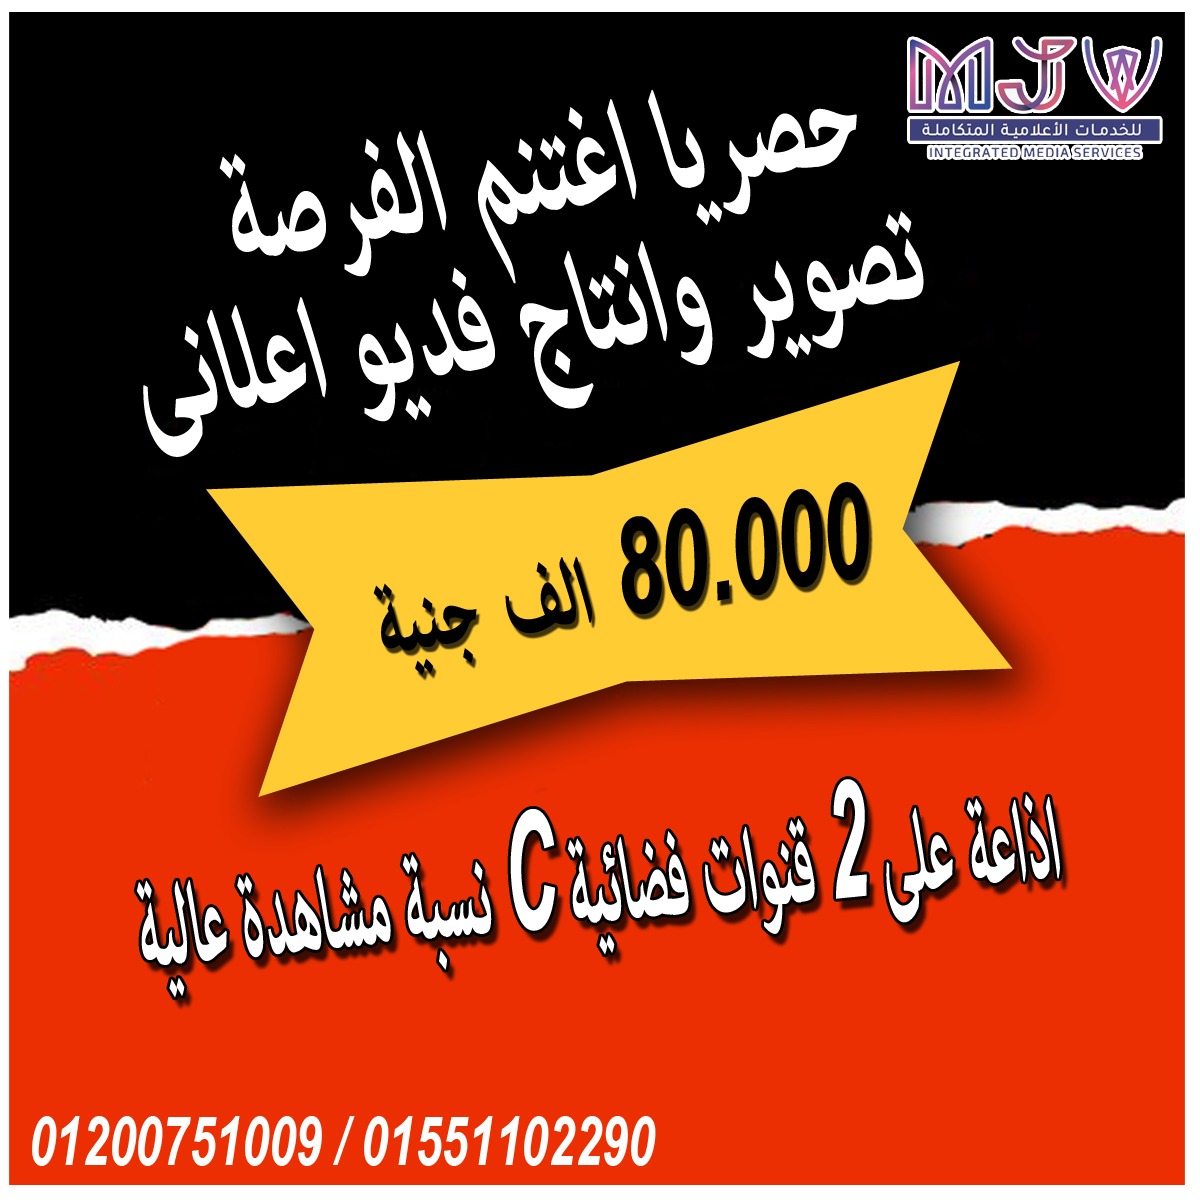 شركات تصوير اعلانات في مصر ( شركة ام جى في للدعايه والاعلان ) P_2213b6auj1